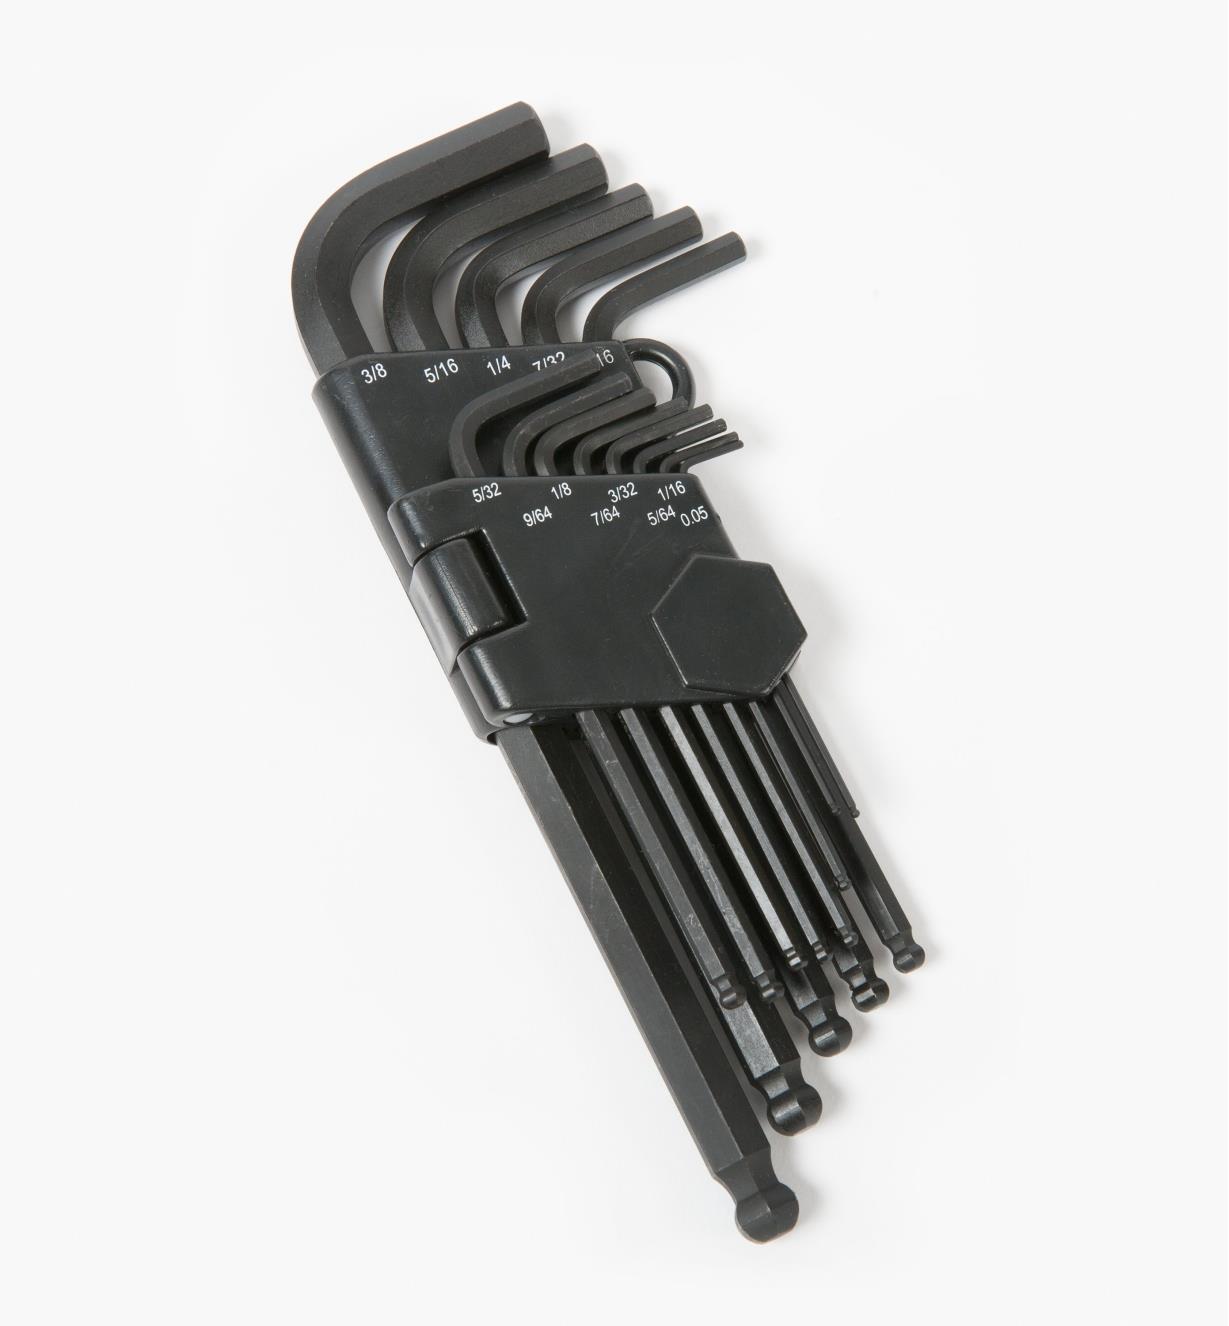 Allen Key Hex Key LONG IMPERIAL 7/16 inch Hexagonal Wrench Key Keys 911-LI 